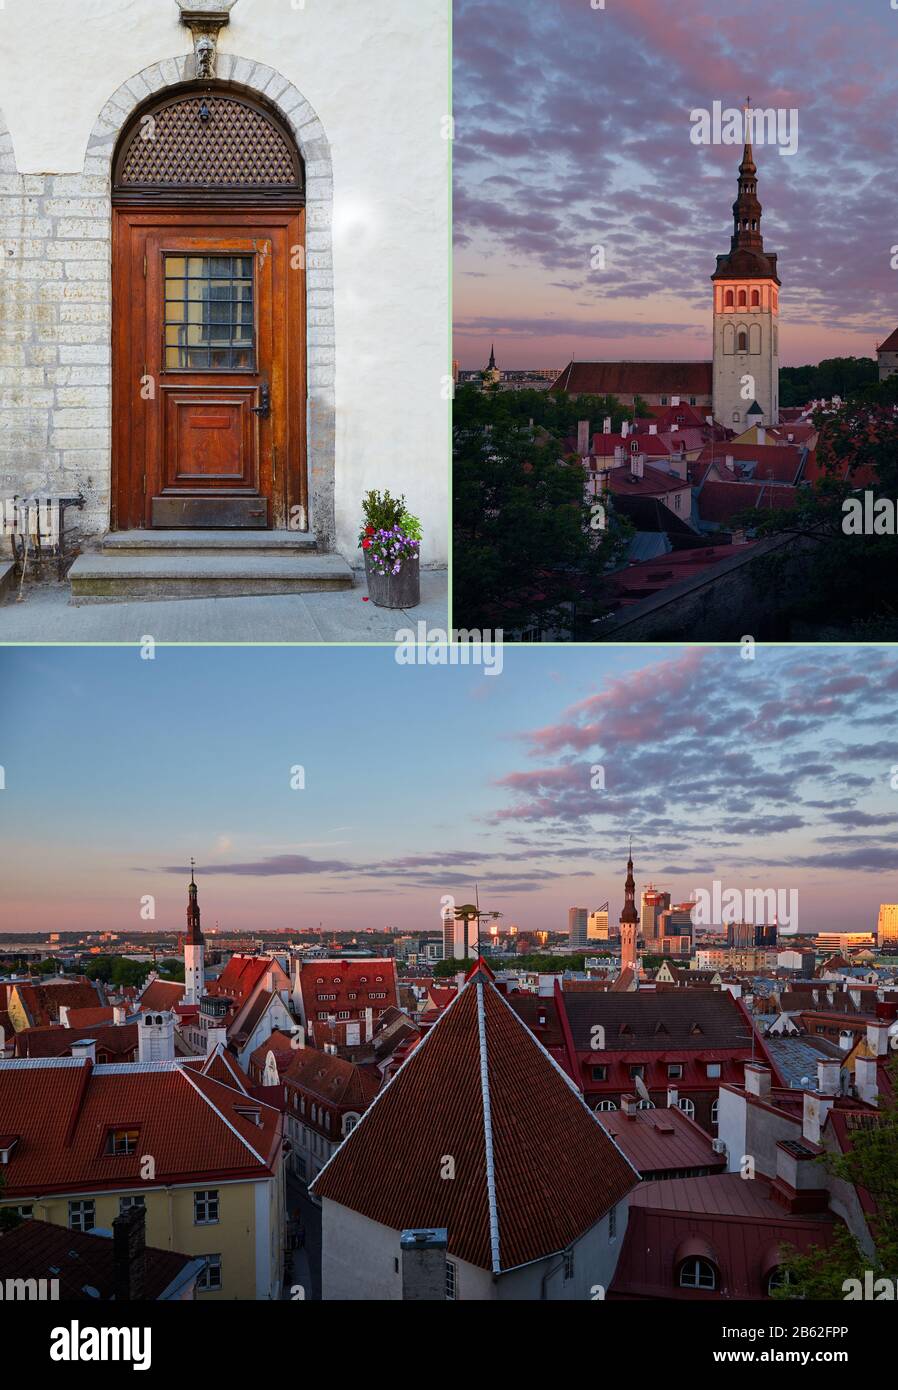 Tallinn, Estonie. Couverture pour blog de voyage. Collage de 3 photos. Banque D'Images